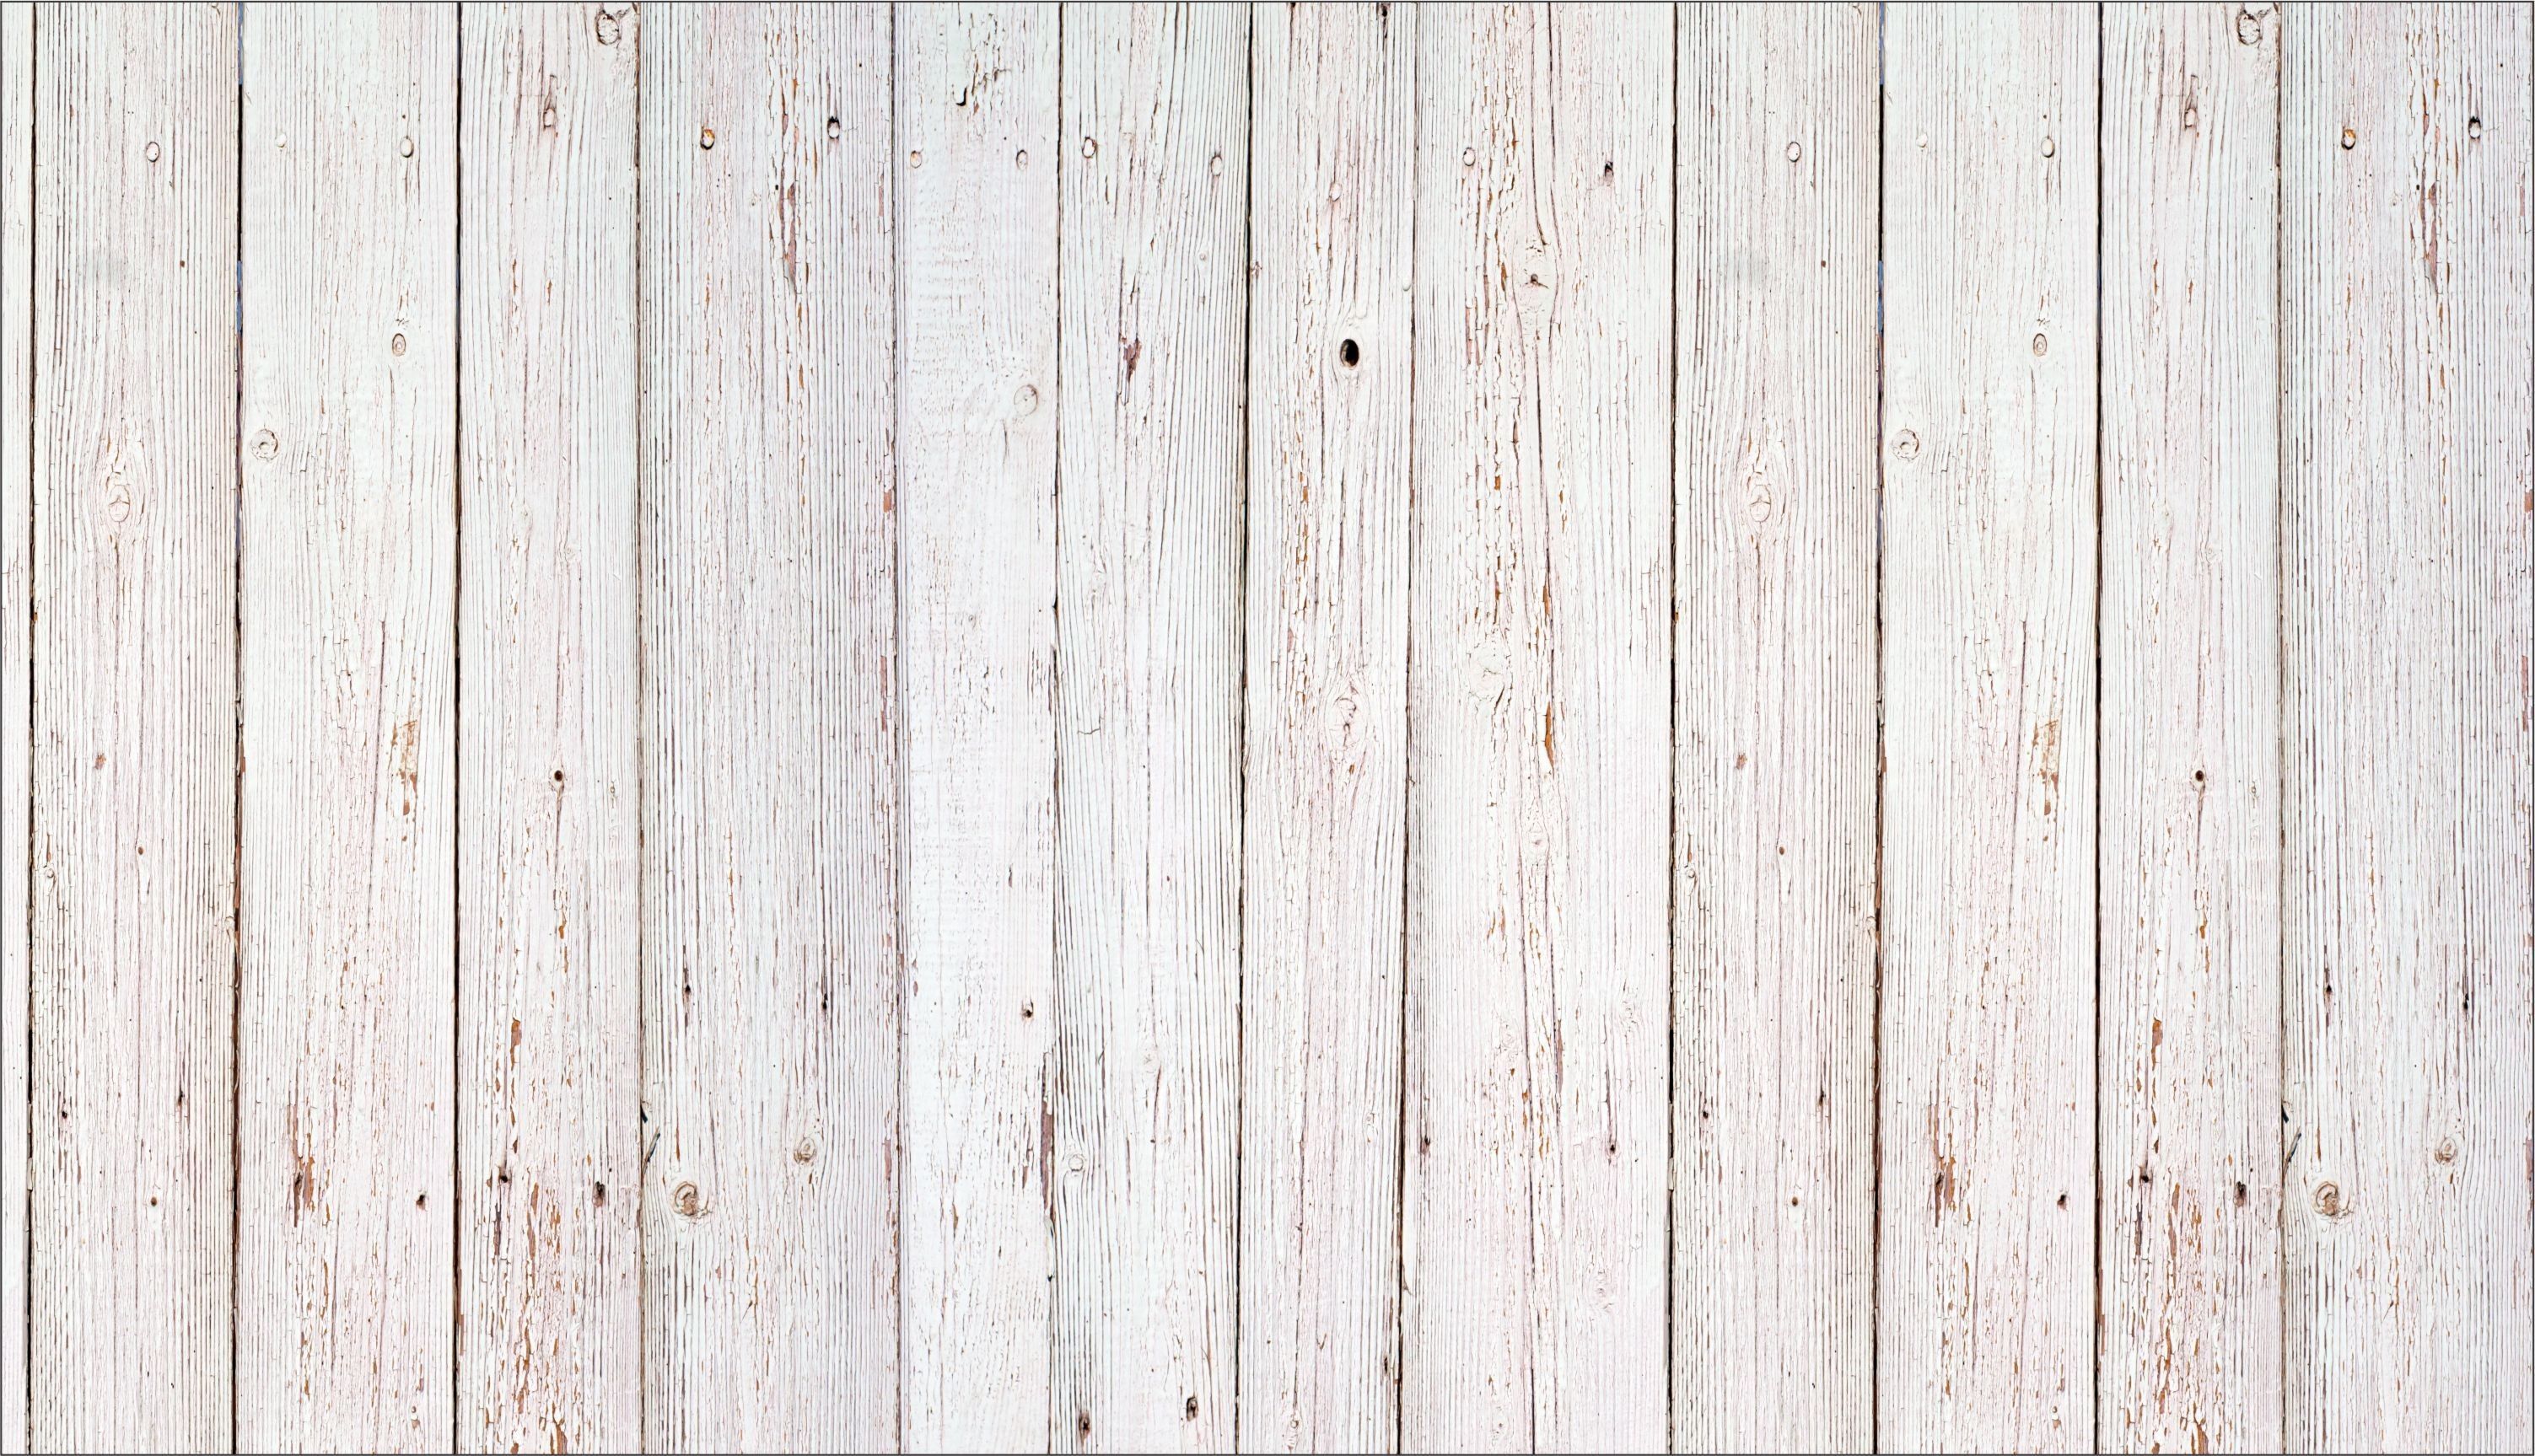 عکس عالی تکسچر چوب سفید با بافت طبیعی و دلنشین 